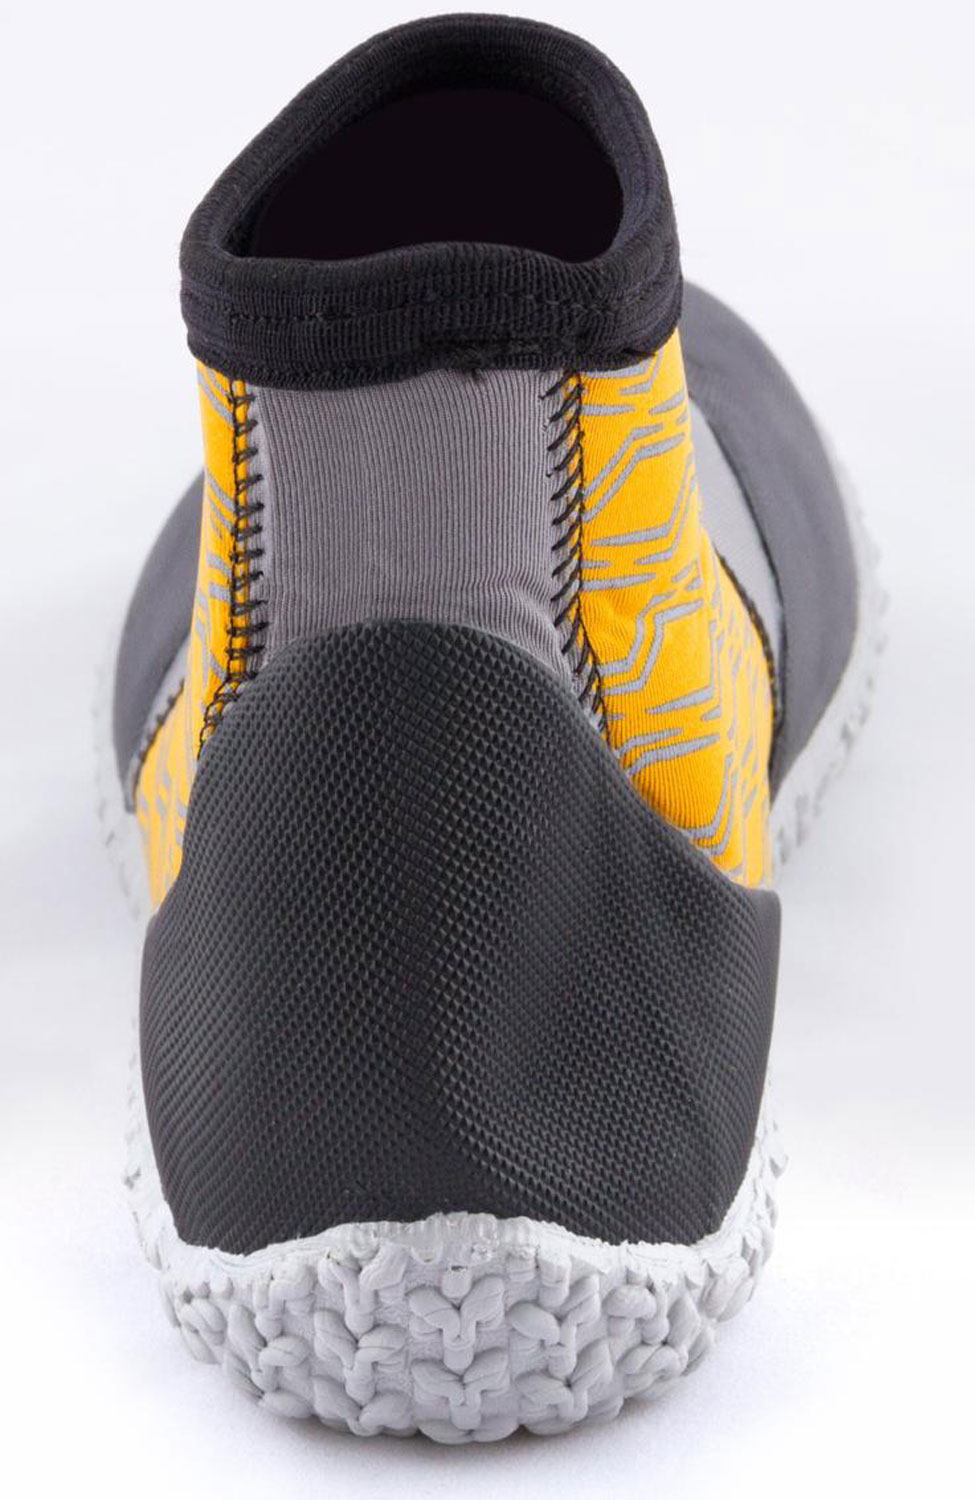 3mm NeoSport Men's Neoprene Low-Top Boots - Orange - image 2 of 5